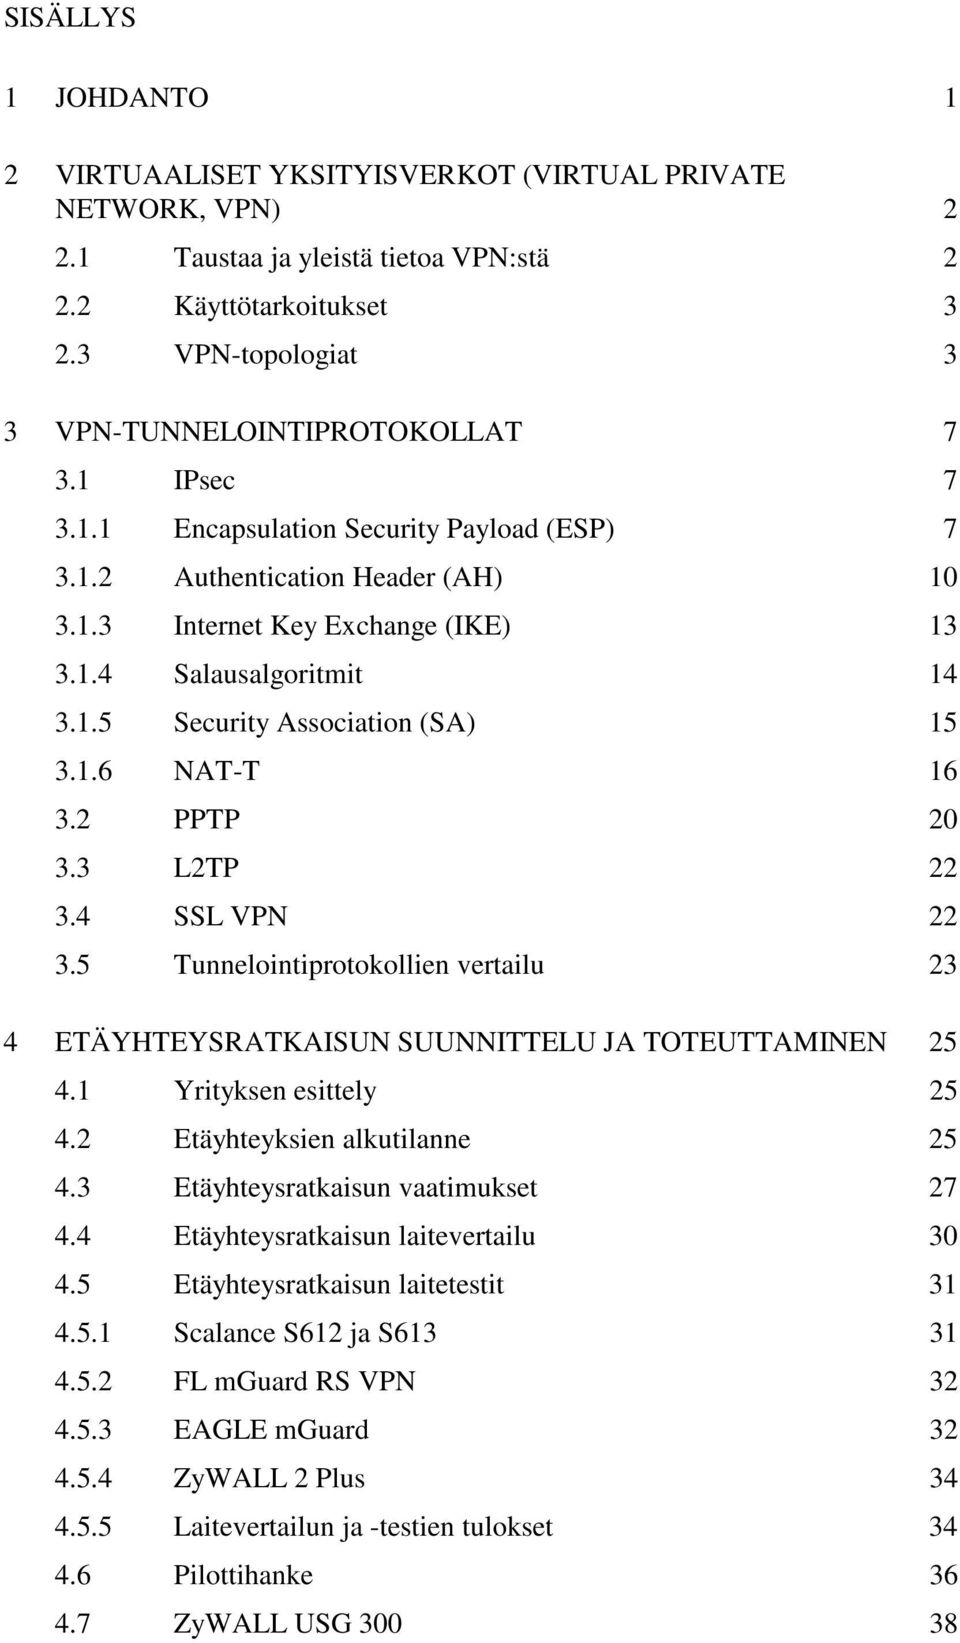 1.5 Security Association (SA) 15 3.1.6 NAT-T 16 3.2 PPTP 20 3.3 L2TP 22 3.4 SSL VPN 22 3.5 Tunnelointiprotokollien vertailu 23 4 ETÄYHTEYSRATKAISUN SUUNNITTELU JA TOTEUTTAMINEN 25 4.